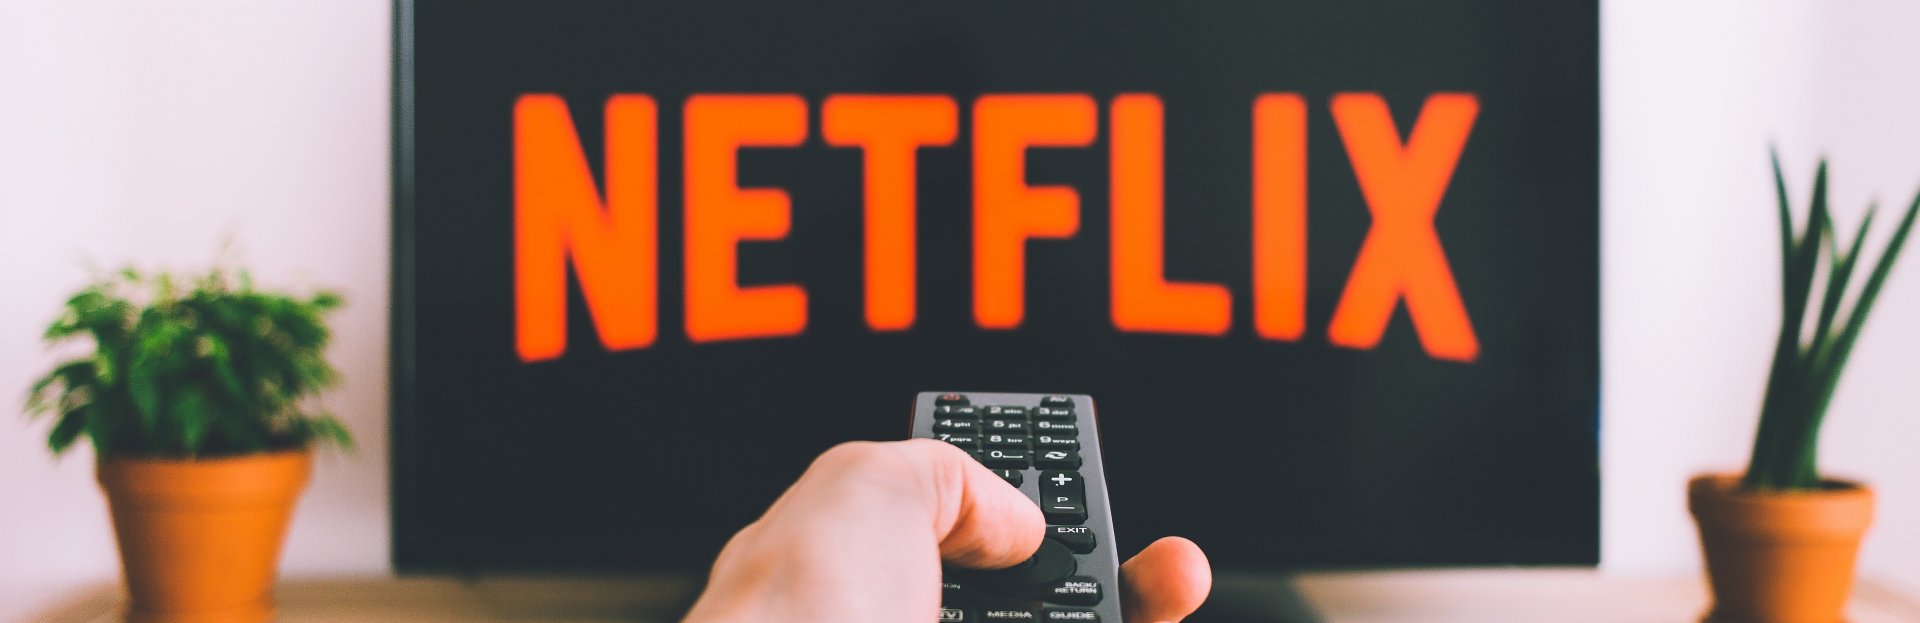 Televisor mostrando el logo de Netflix